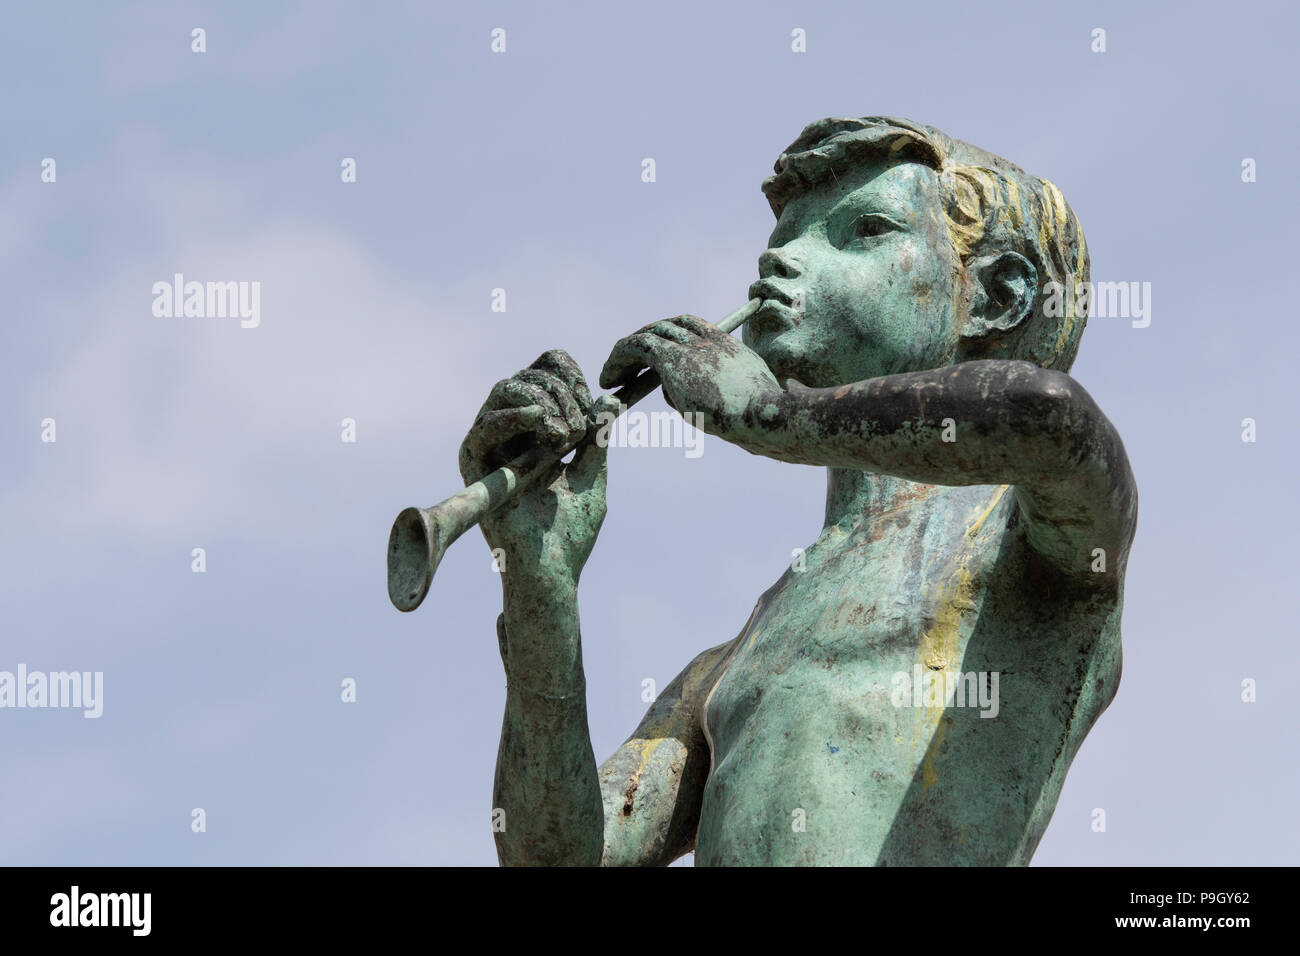 Estatua de Peter Pan, de Kirriemuir Angus, Escocia. Foto de stock